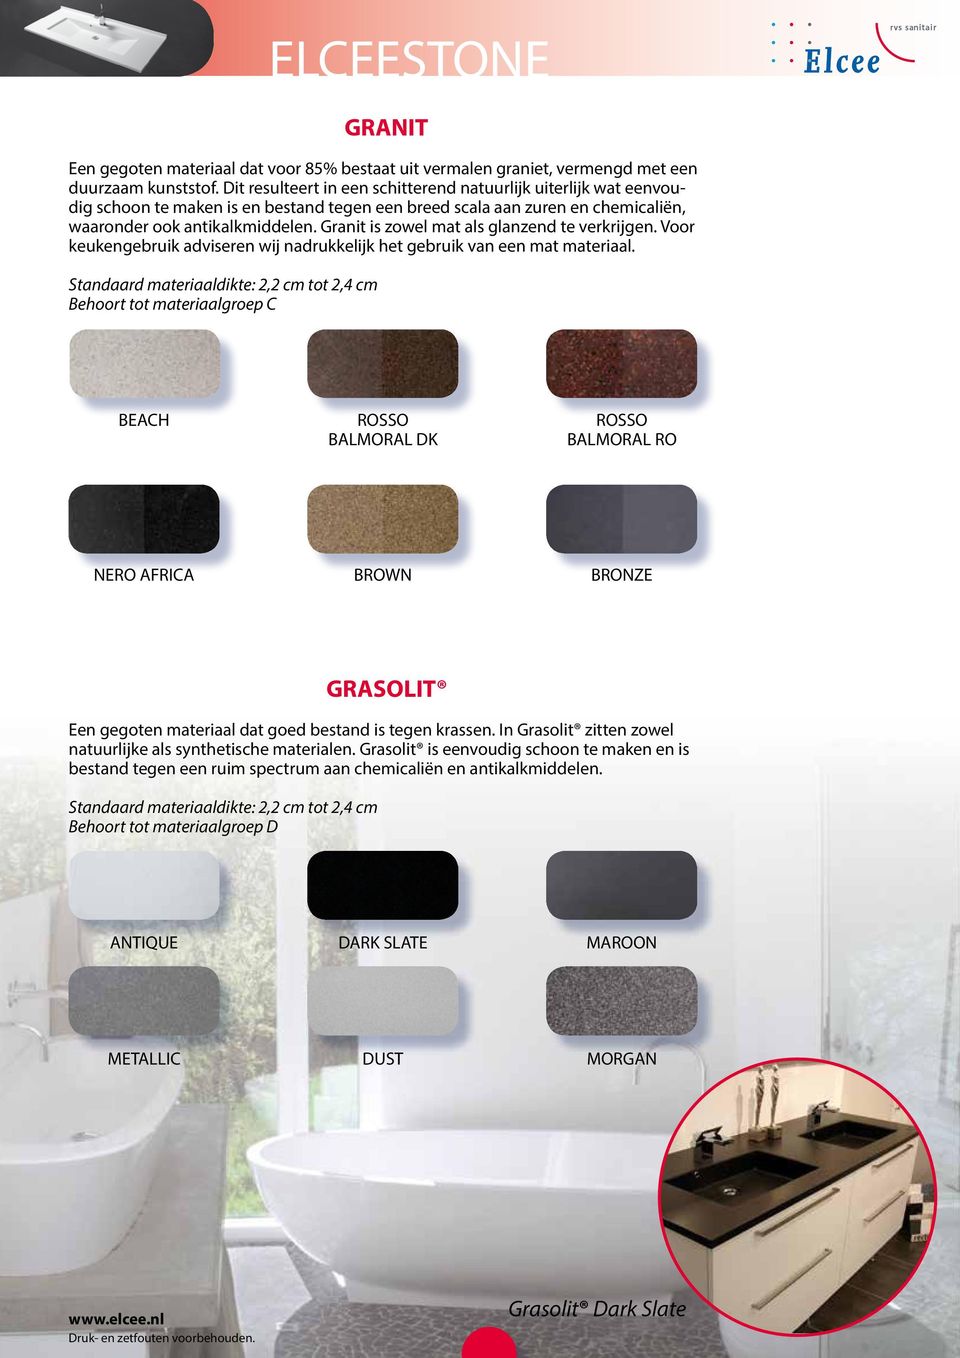 Granit is zowel mat als glanzend te verkrijgen. Voor keukengebruik adviseren wij nadrukkelijk het gebruik van een mat materiaal.